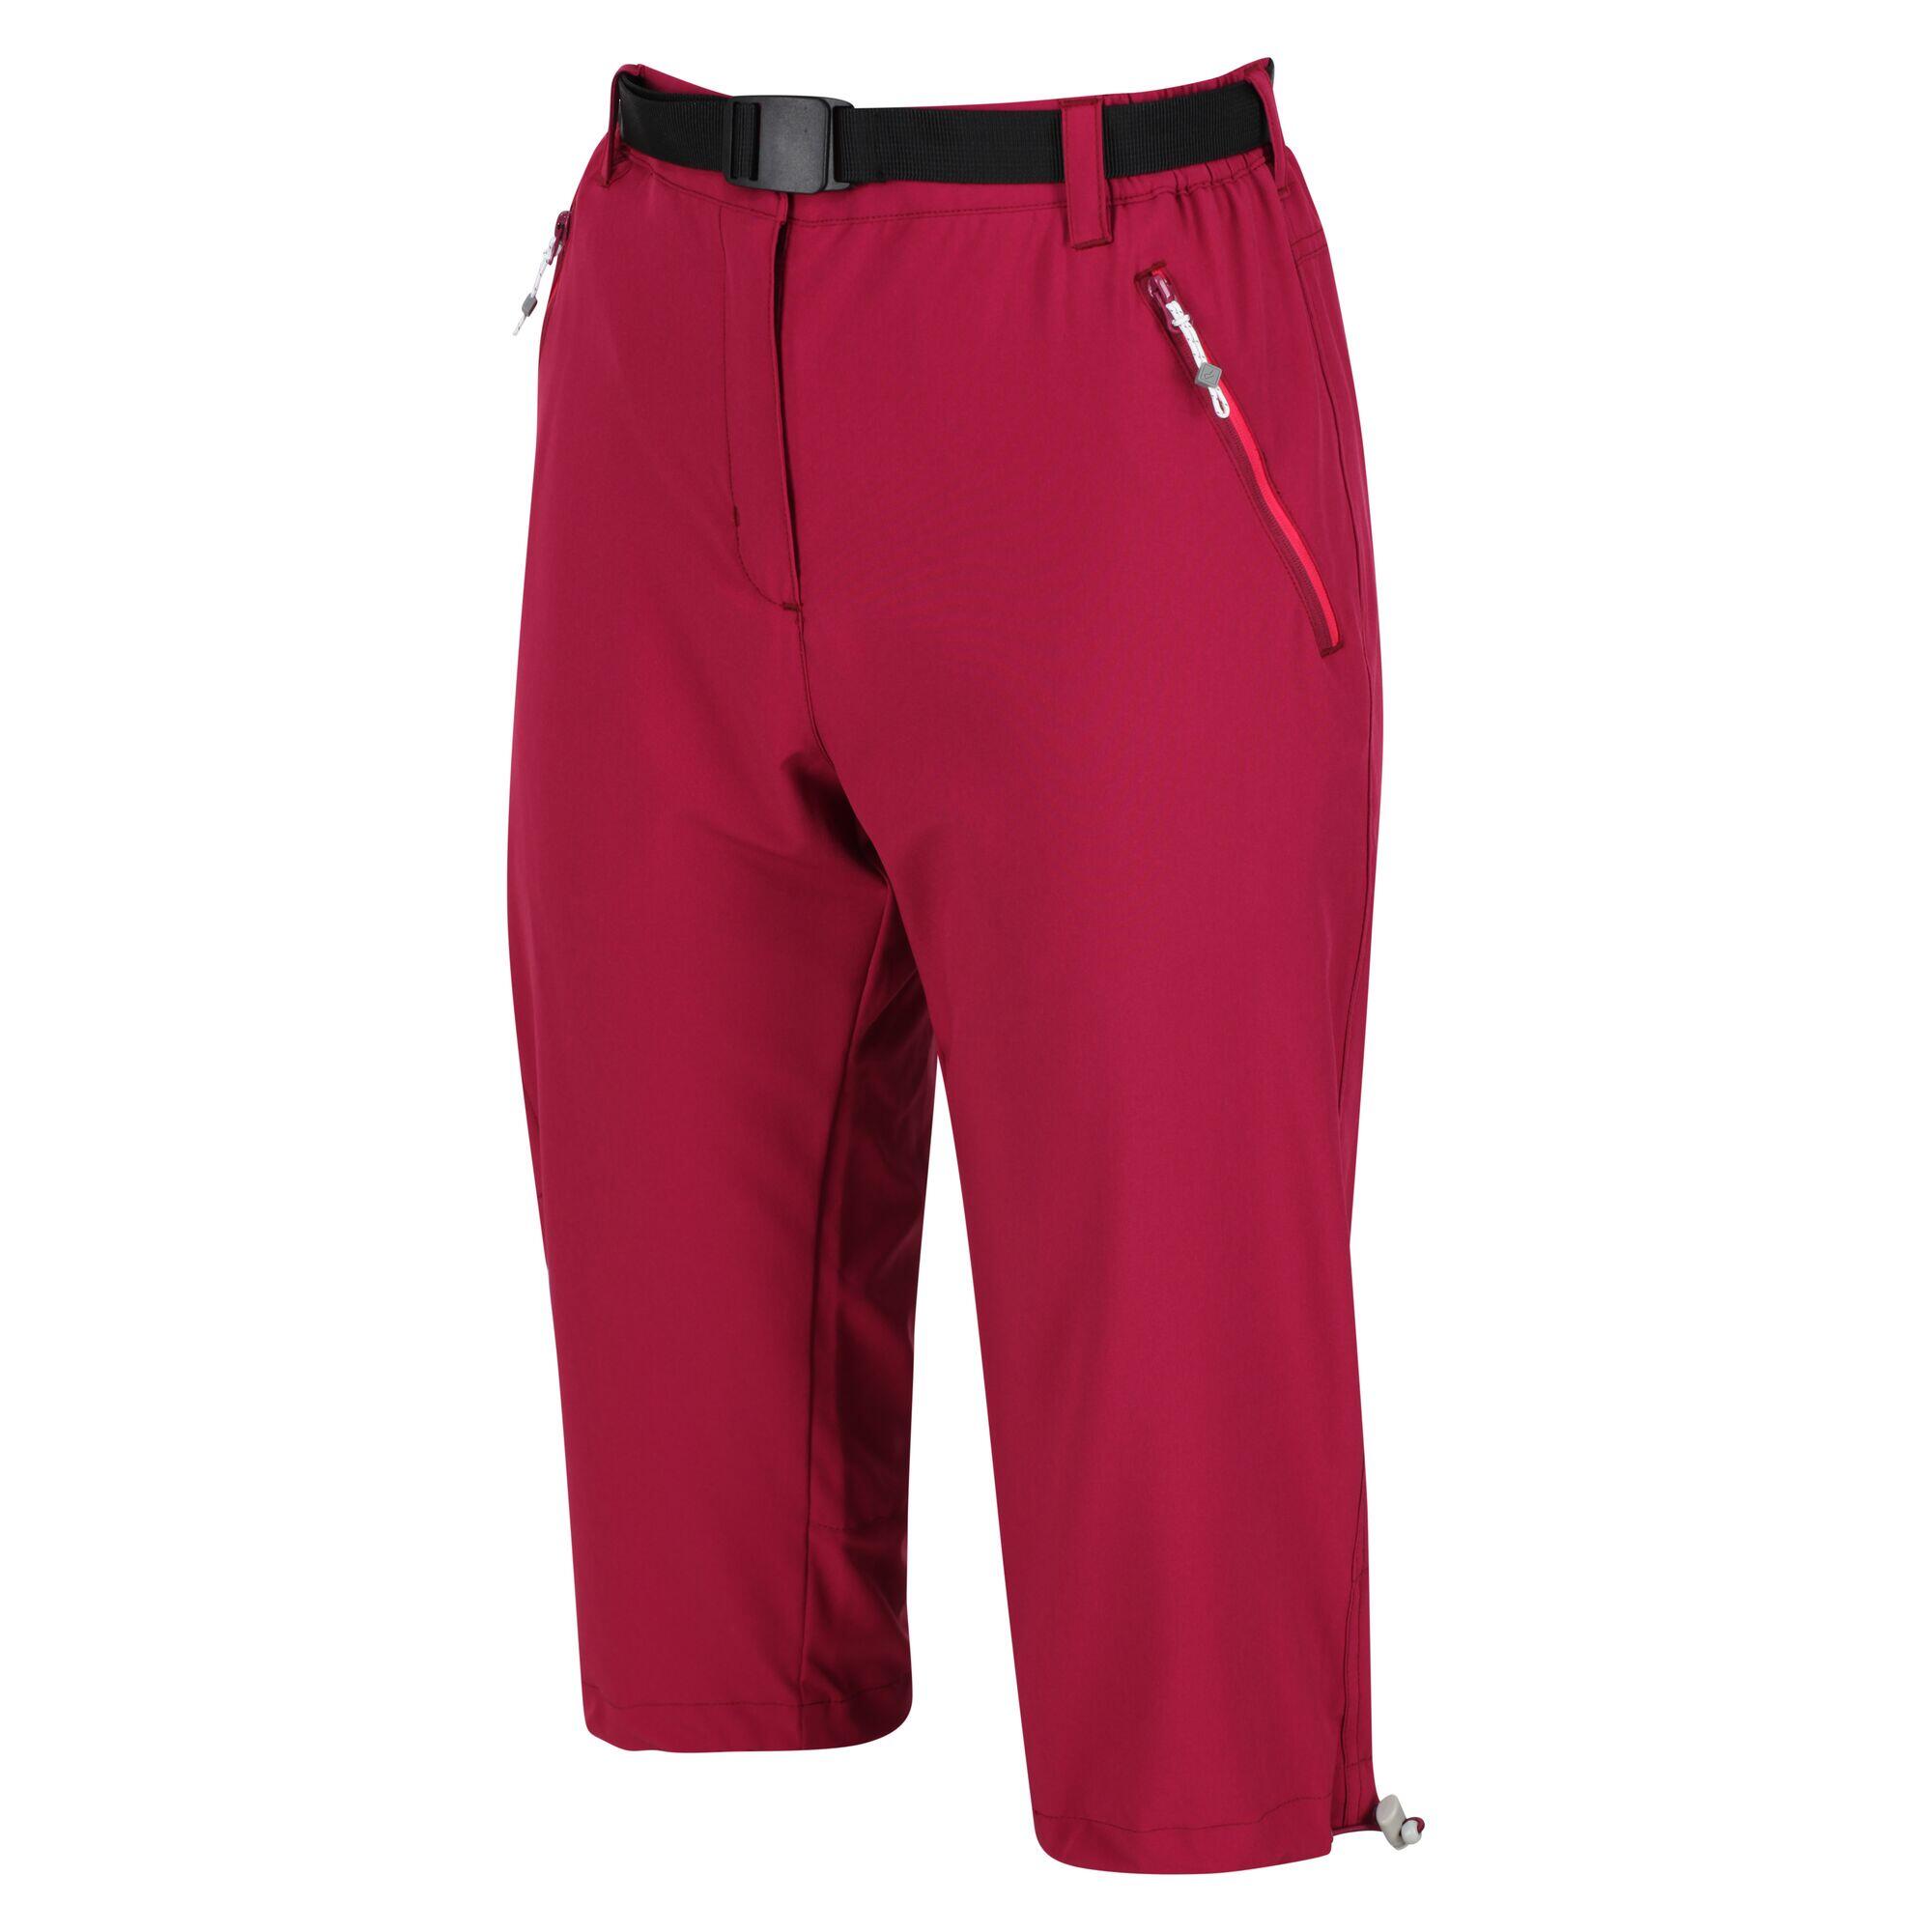 REGATTA Xert Stretch Women's Walking Capris - Pink Plum